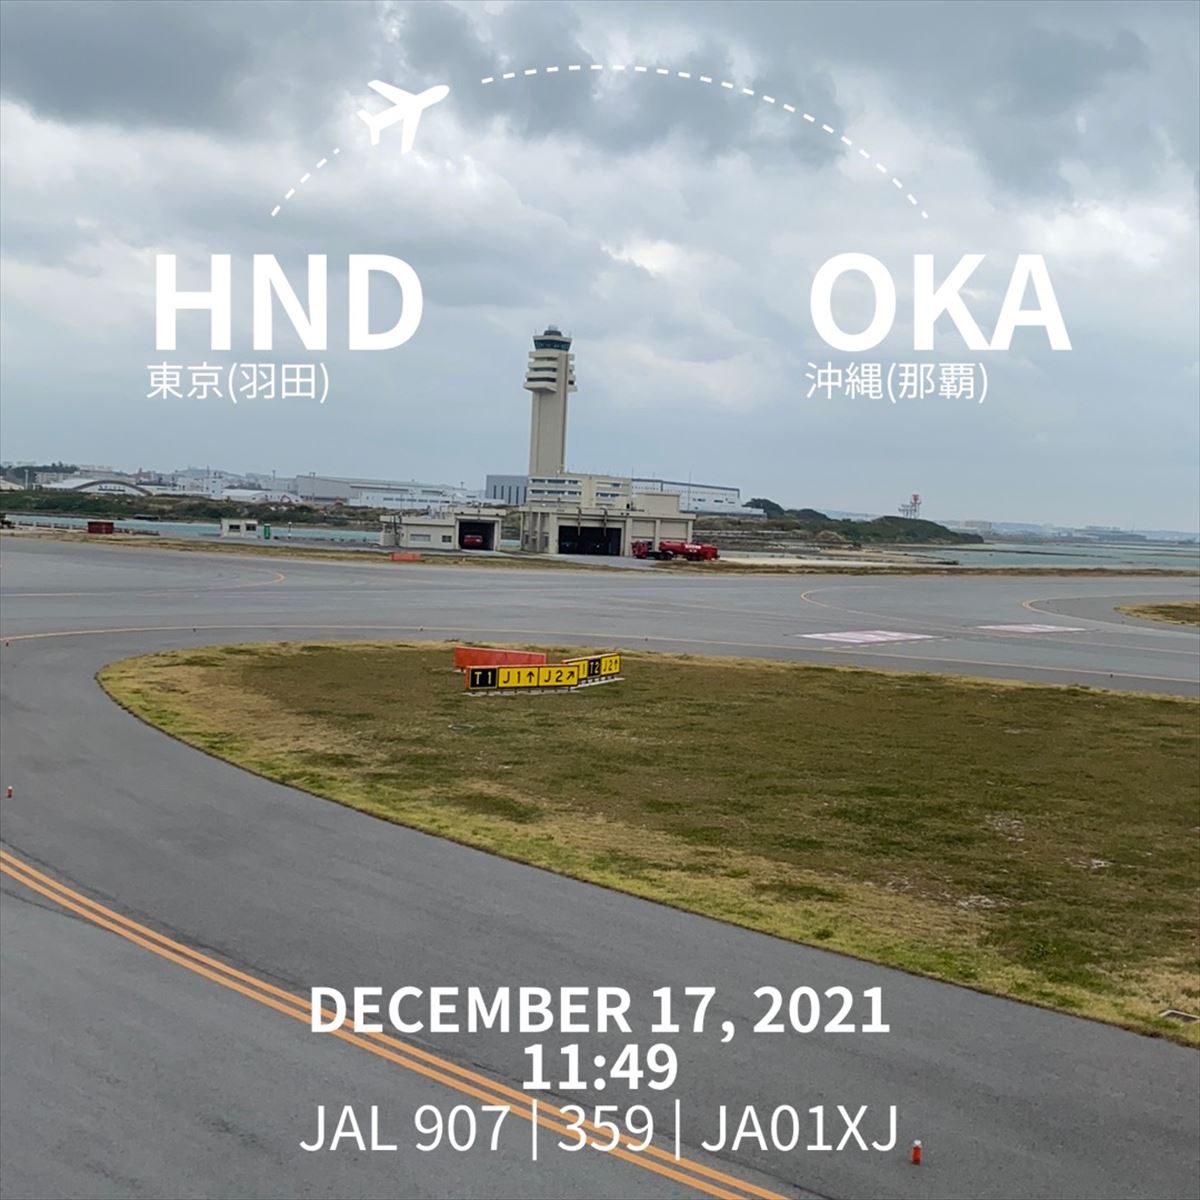 エアバスA350-900型機 JL907 羽田～沖縄(那覇) 搭乗記 ファーストクラス 17DEC21